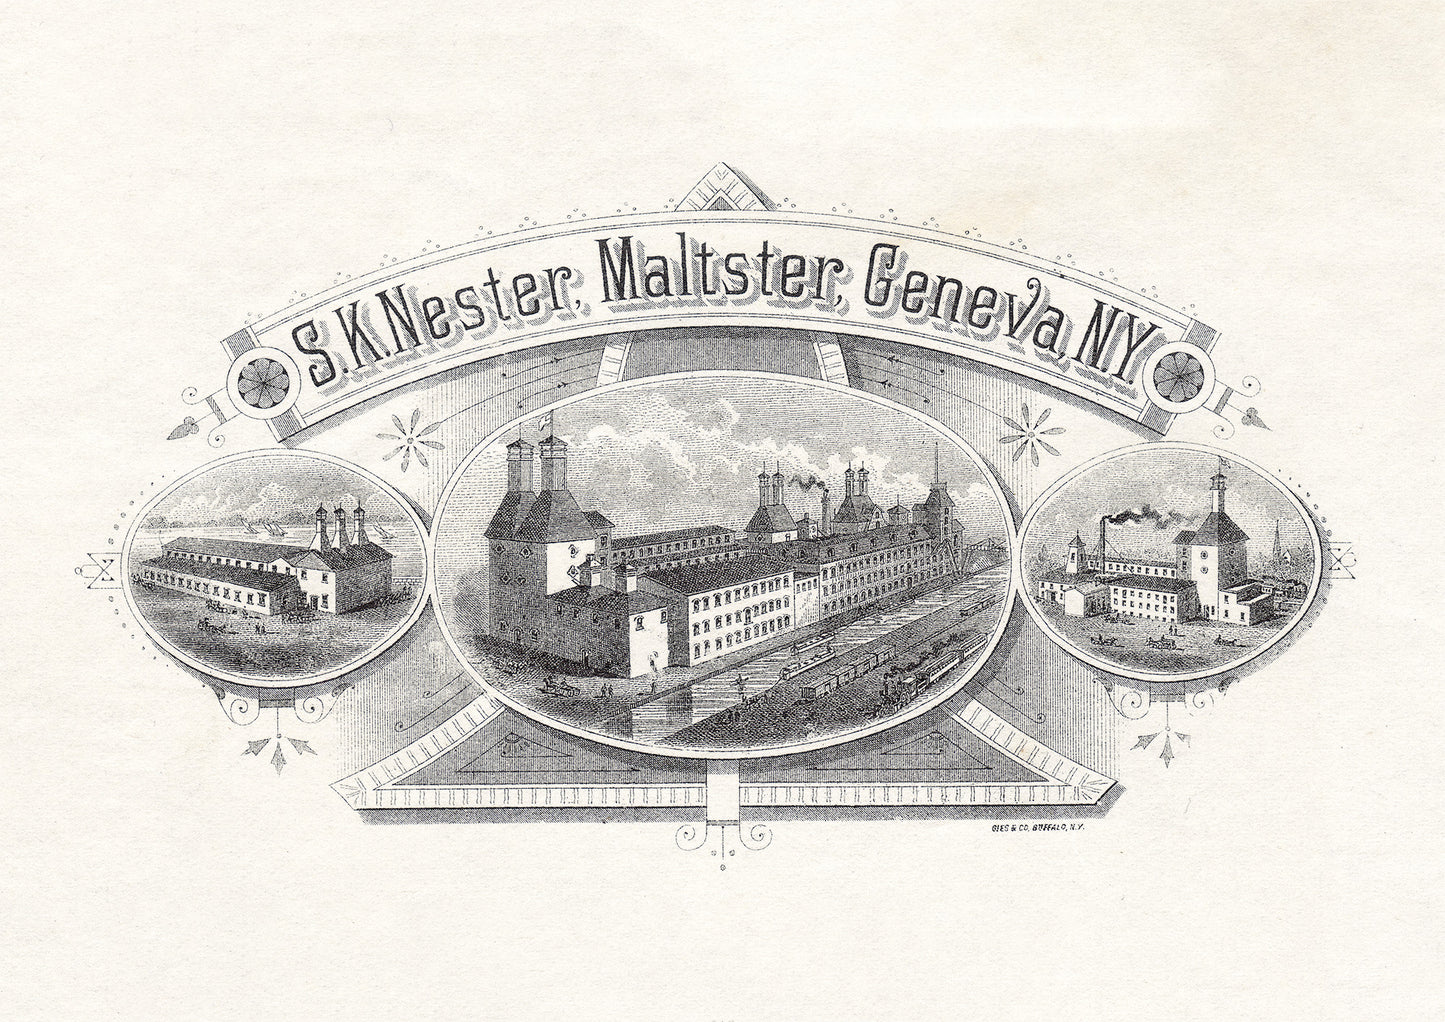 S. K. Nester, Maltster, Geneva, NY - Letterhead Graphic - Print - Stomping Grounds